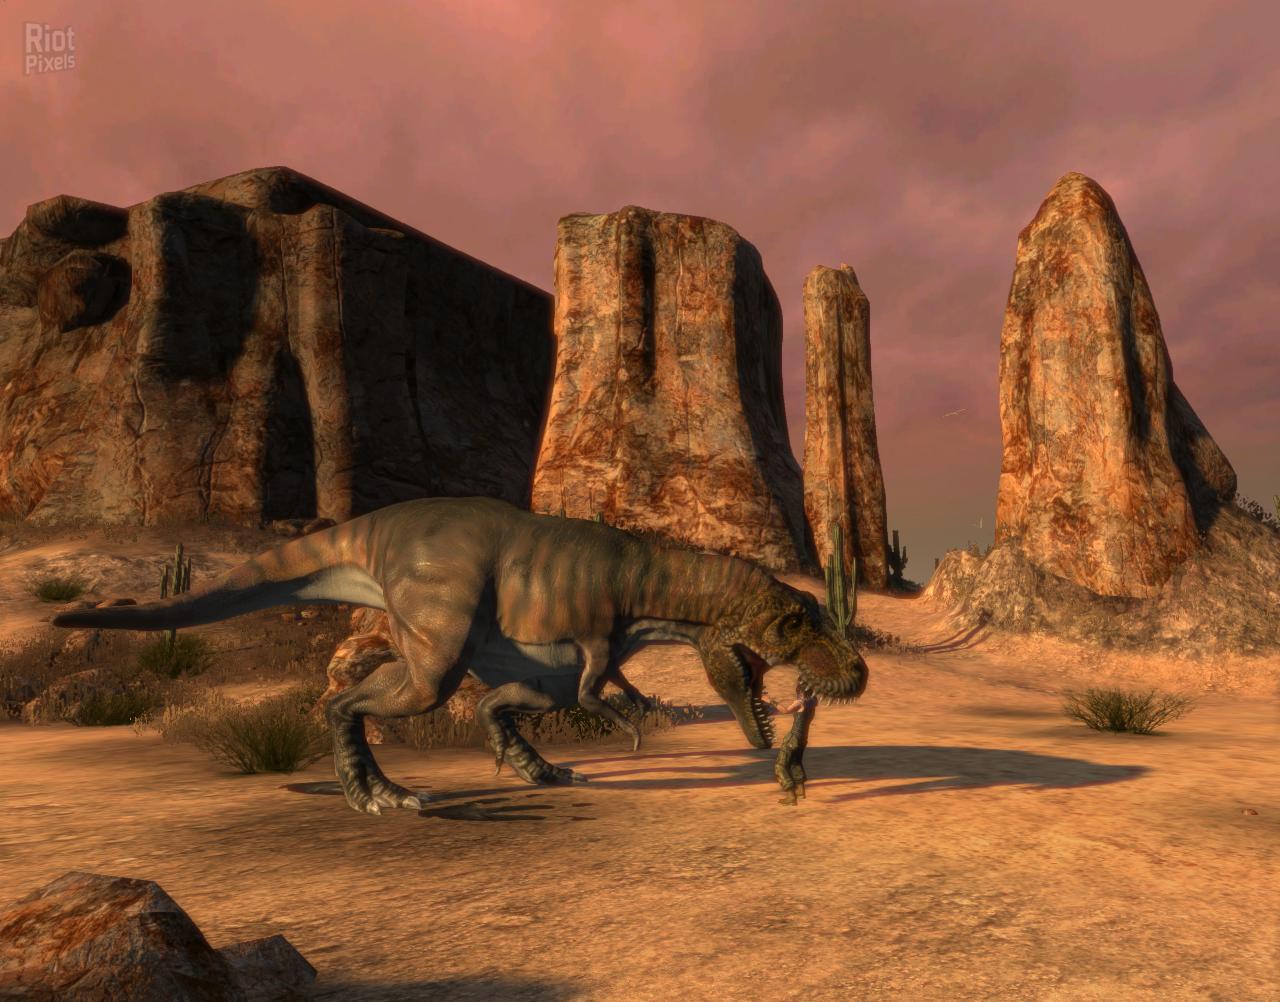 Carnivores: Dinosaur Hunter Reborn Wallpapers